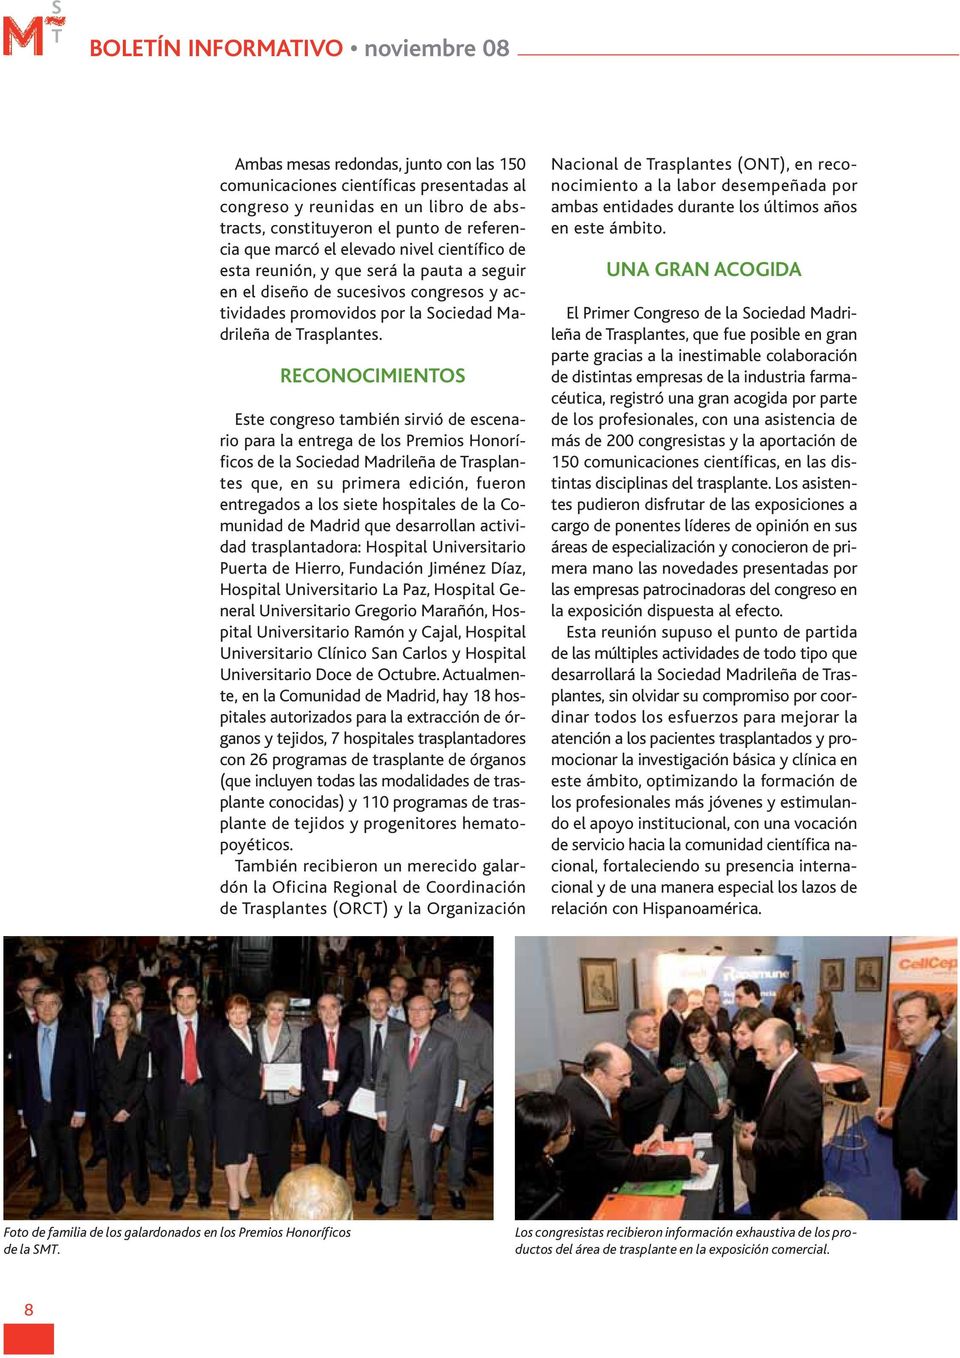 RECONOCIMIENOS Este congreso también sirvió de escenario para la entrega de los Premios Honoríficos de la Sociedad Madrileña de rasplantes que, en su primera edición, fueron entregados a los siete